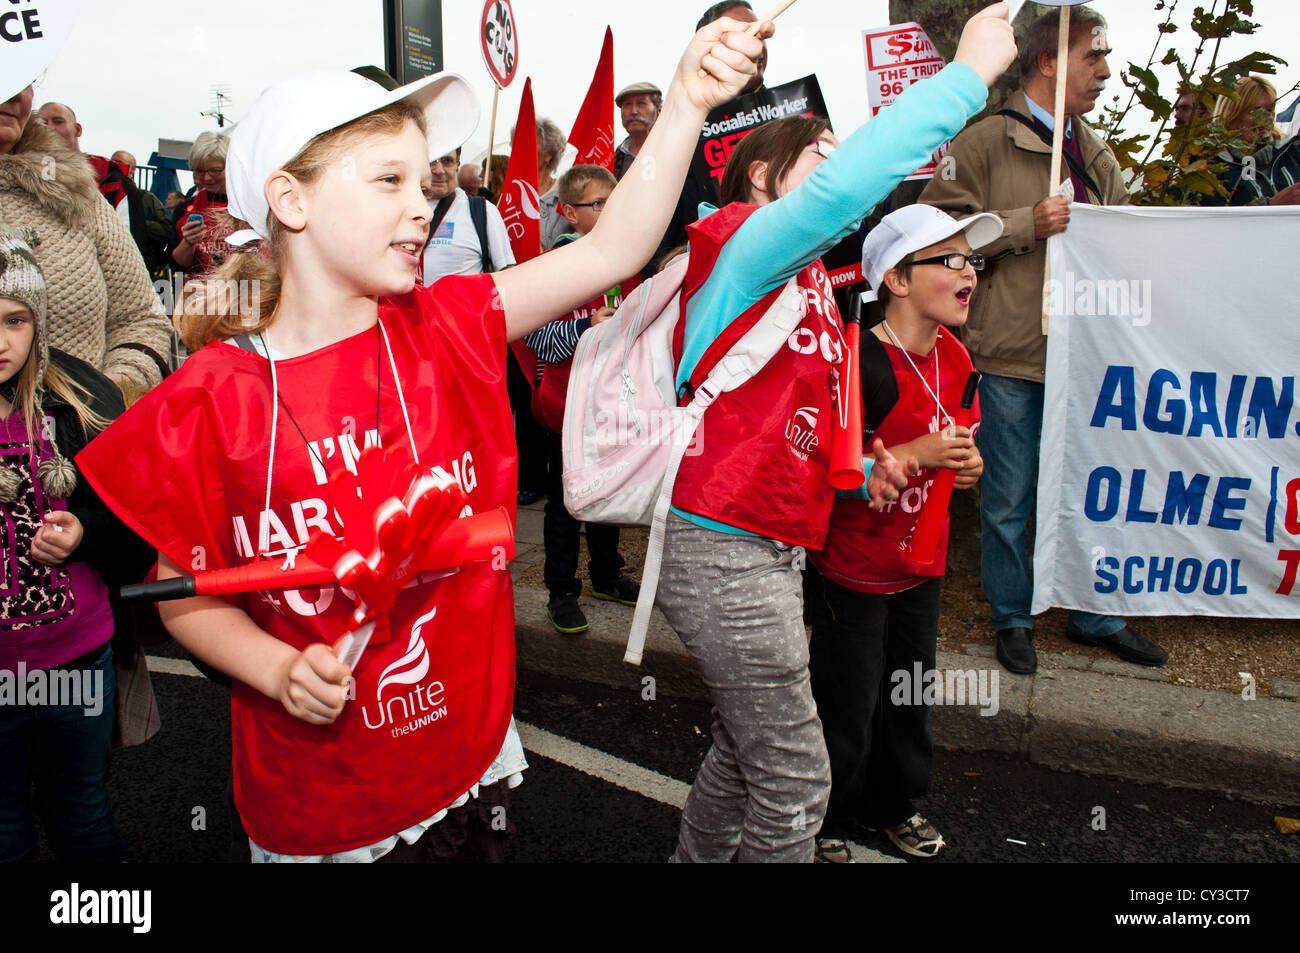 20.10.12 LONDON: Kinder winken vereinen Flaggen auf dem TUC A Future, die Works-Marsch. Mehr als 100.000 Menschen marschierten. Stockfoto